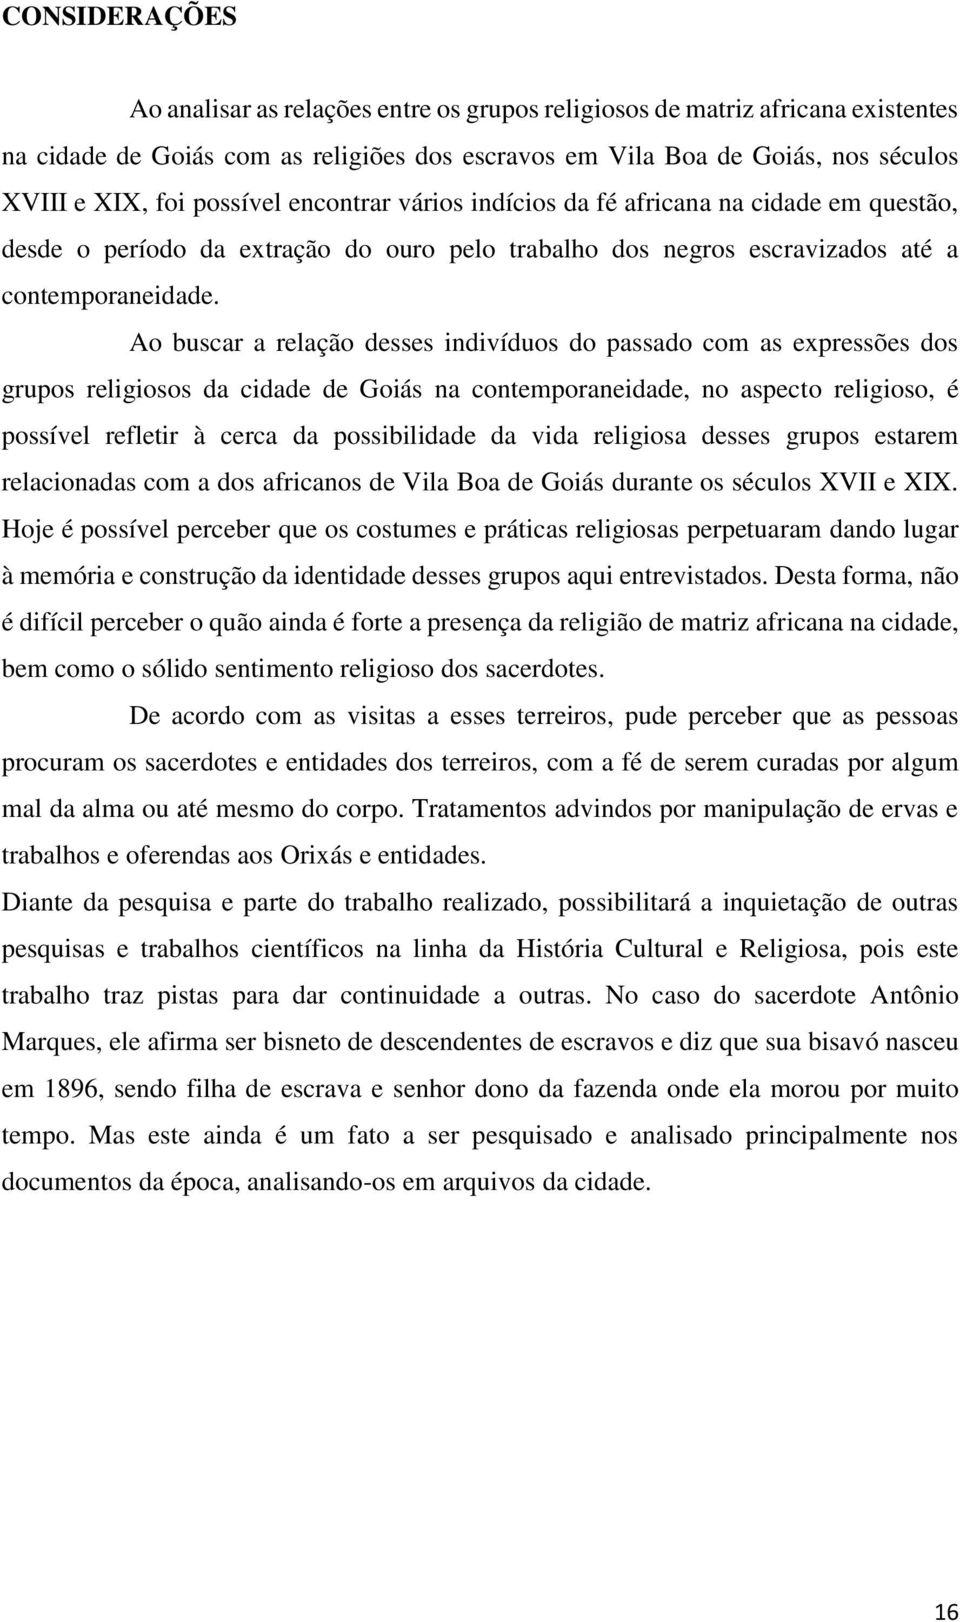 Ao buscar a relação desses indivíduos do passado com as expressões dos grupos religiosos da cidade de Goiás na contemporaneidade, no aspecto religioso, é possível refletir à cerca da possibilidade da